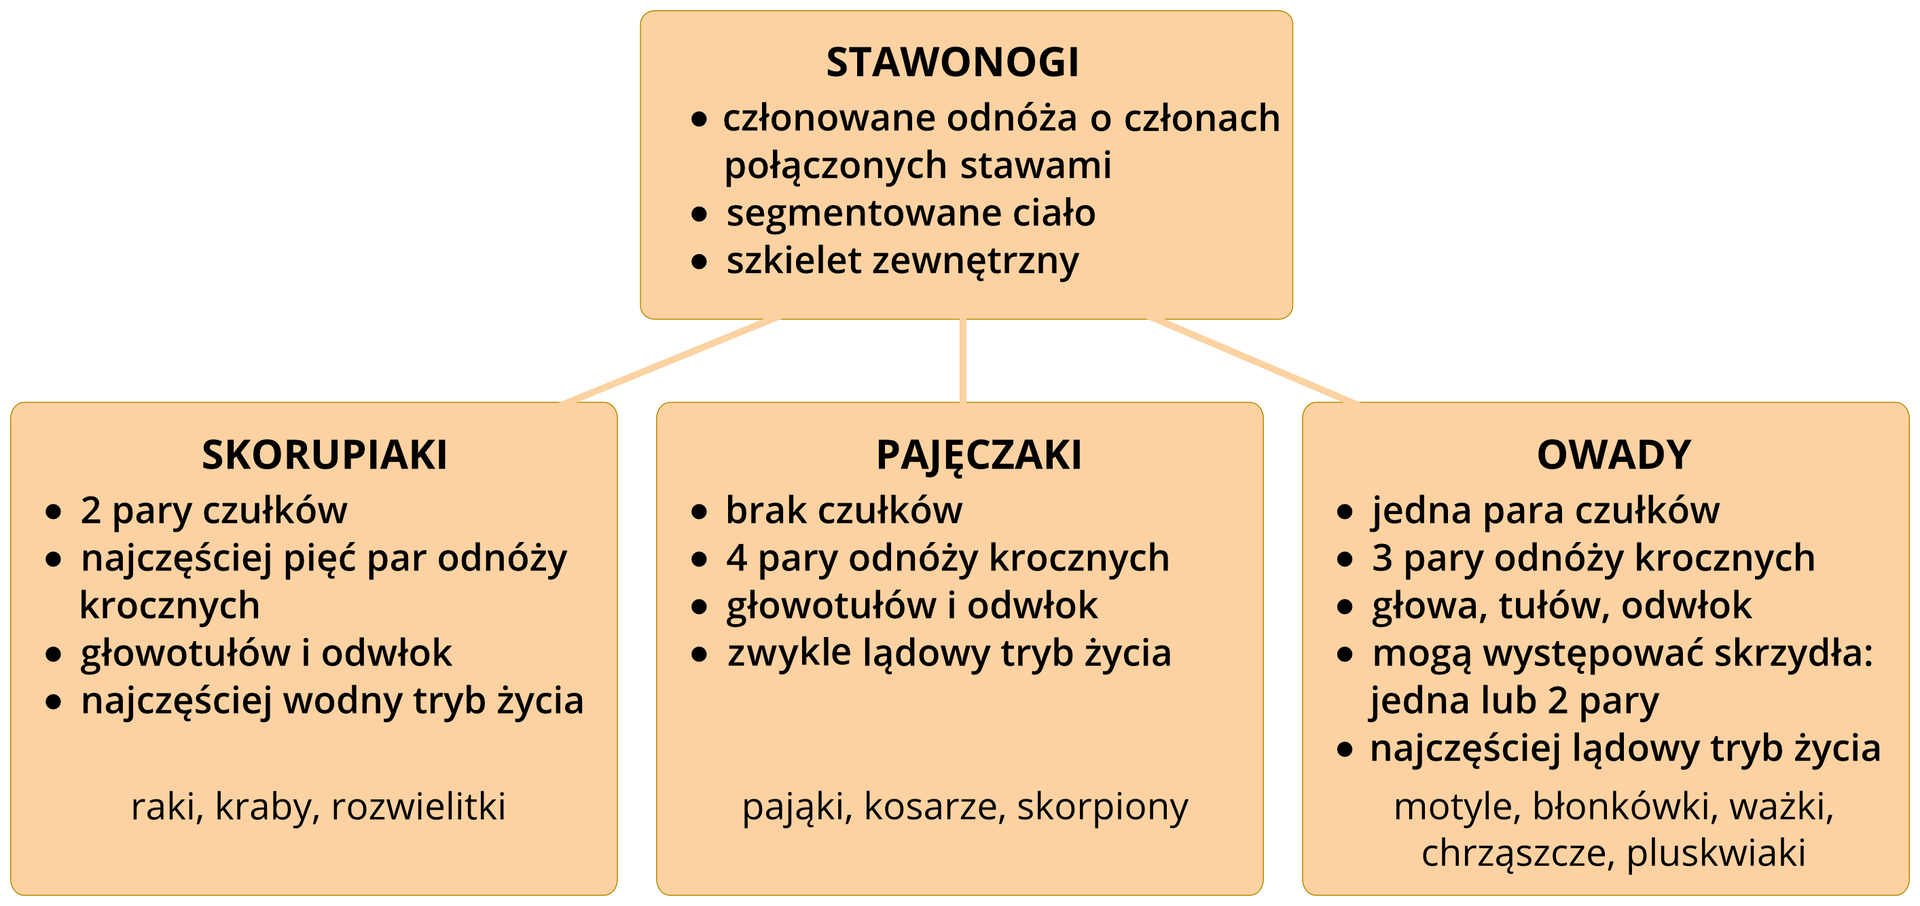 Schemat przedstawia podział stawonogów na trzy grupy: skorupiaki, pajęczaki, owady. W pomarańczowych czworokątach znajdują się syntetyczne opisy każdej z grup. Pod każdą z grup dodatkowo pomarańczowe tabliczki z nazwami grup, które będą dalej opisywane.